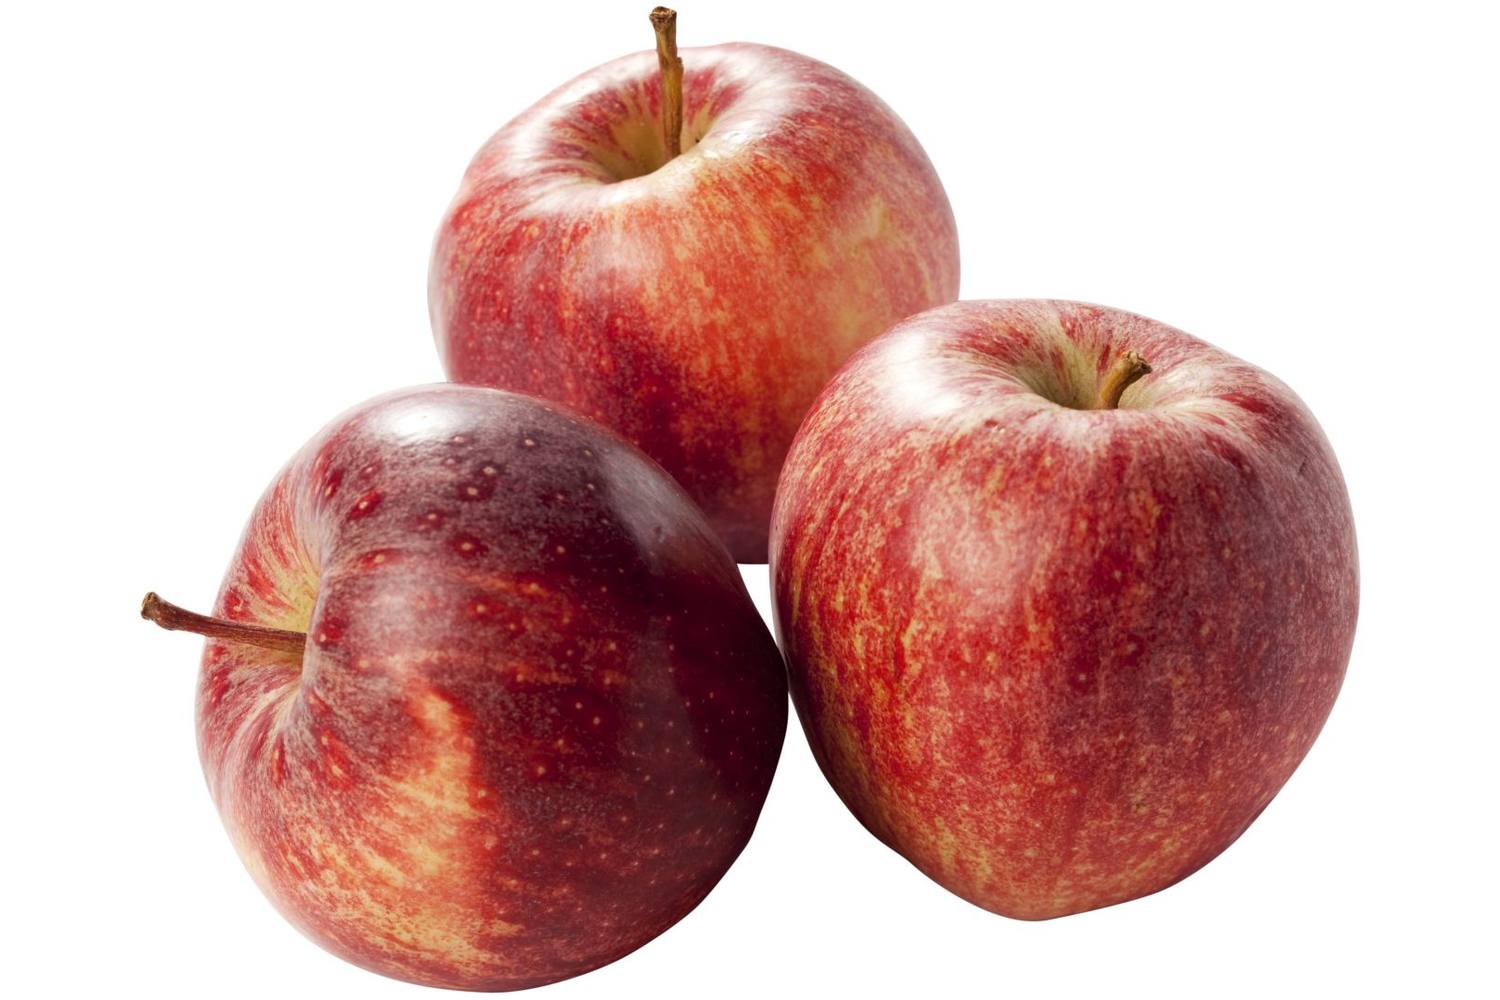 Gala appels verpakt 6st kist 8 stuks 1